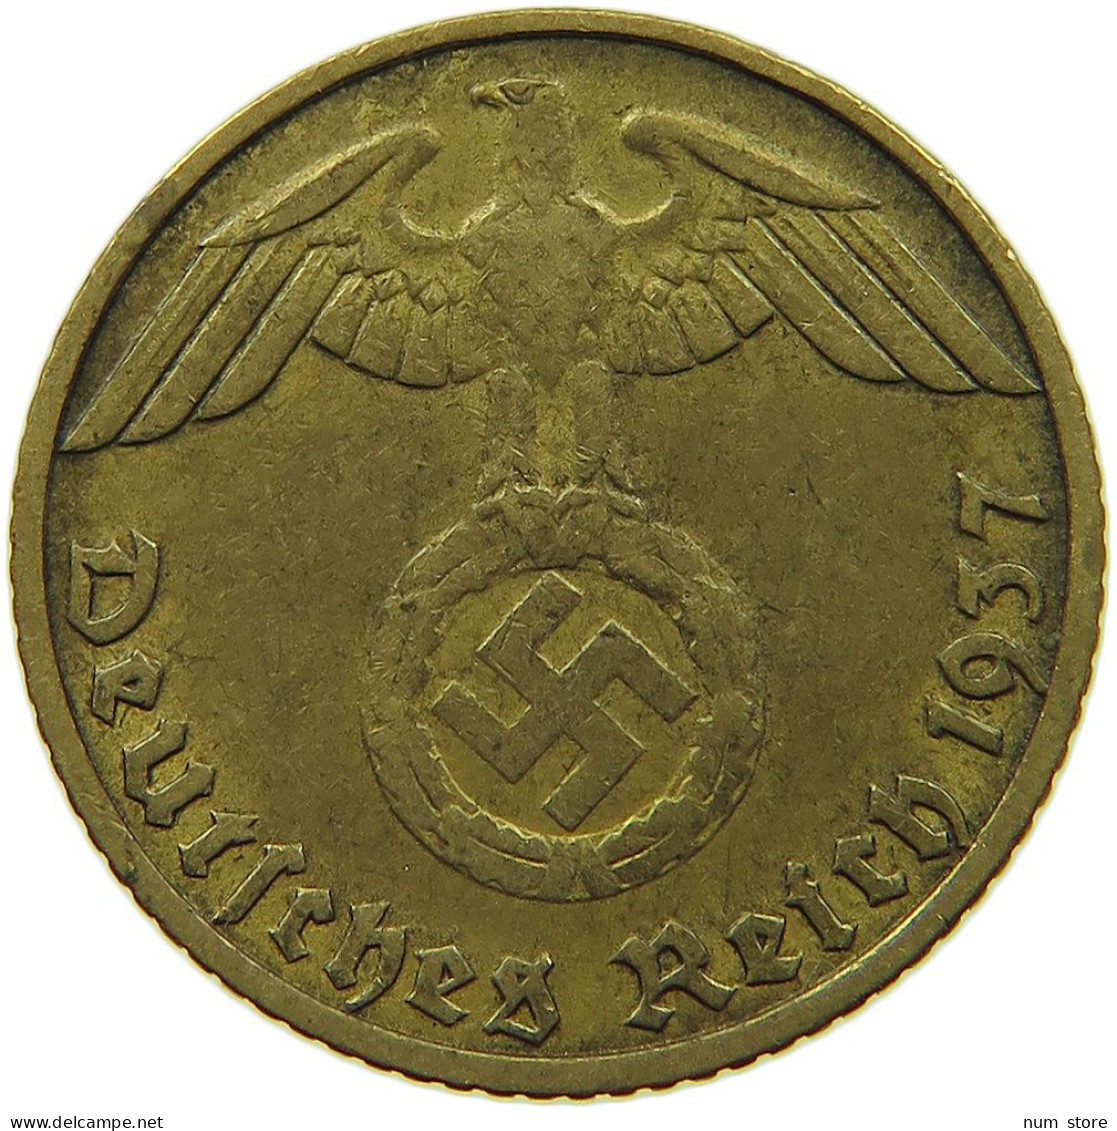 GERMANY 5 REICHSPFENNIG 1937 J #s091 0805 - 5 Reichspfennig